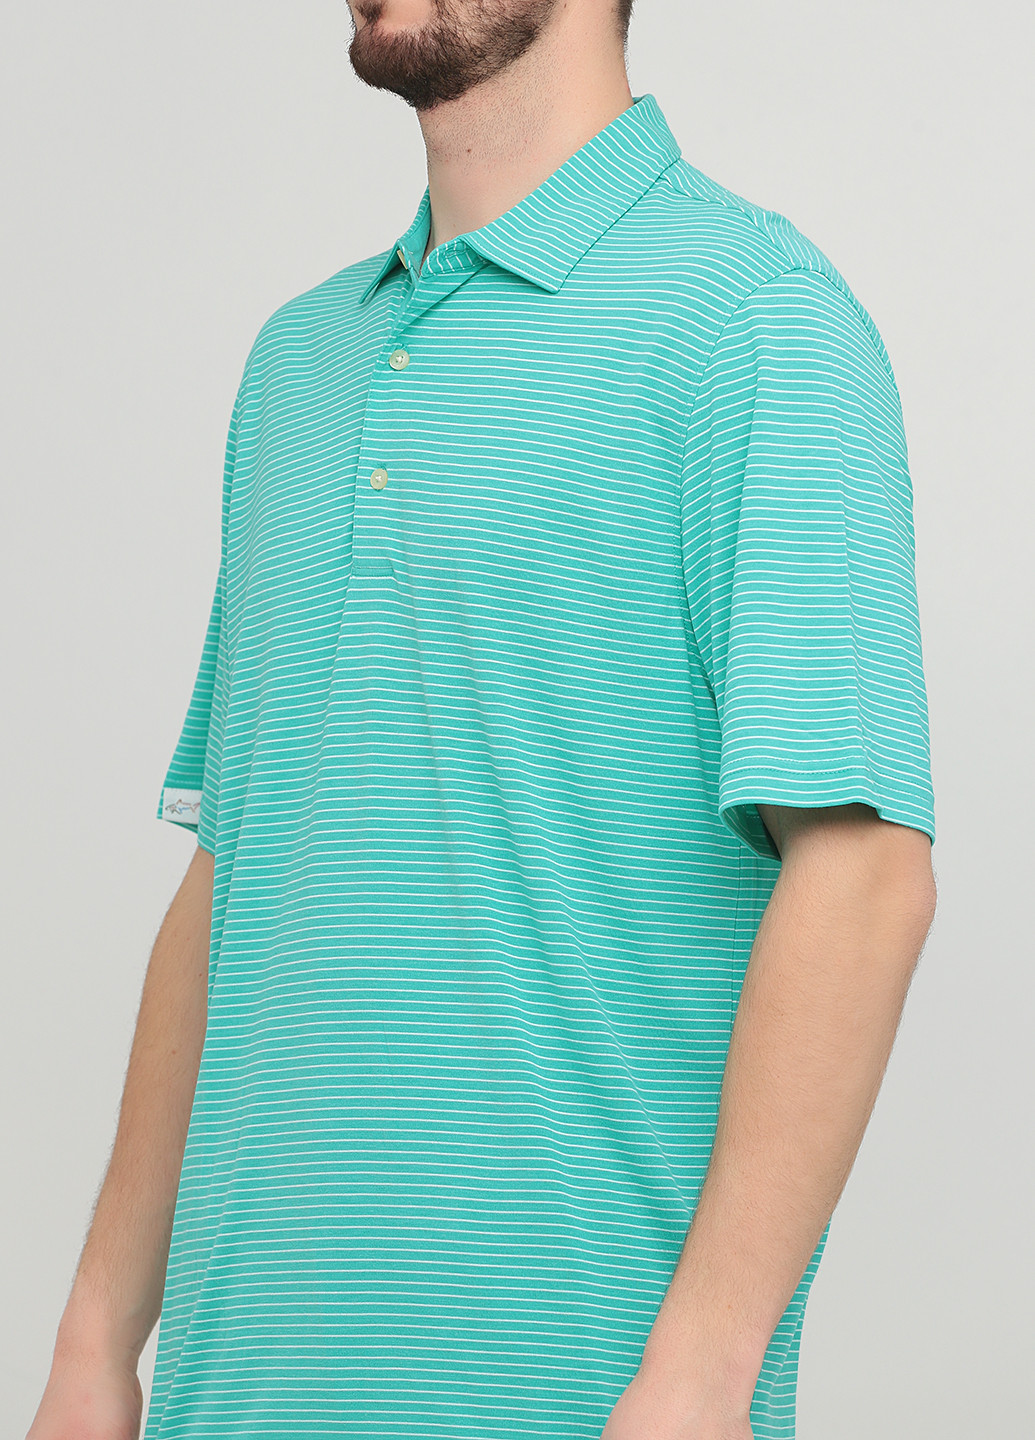 Зеленая футболка-поло для мужчин Greg Norman в полоску